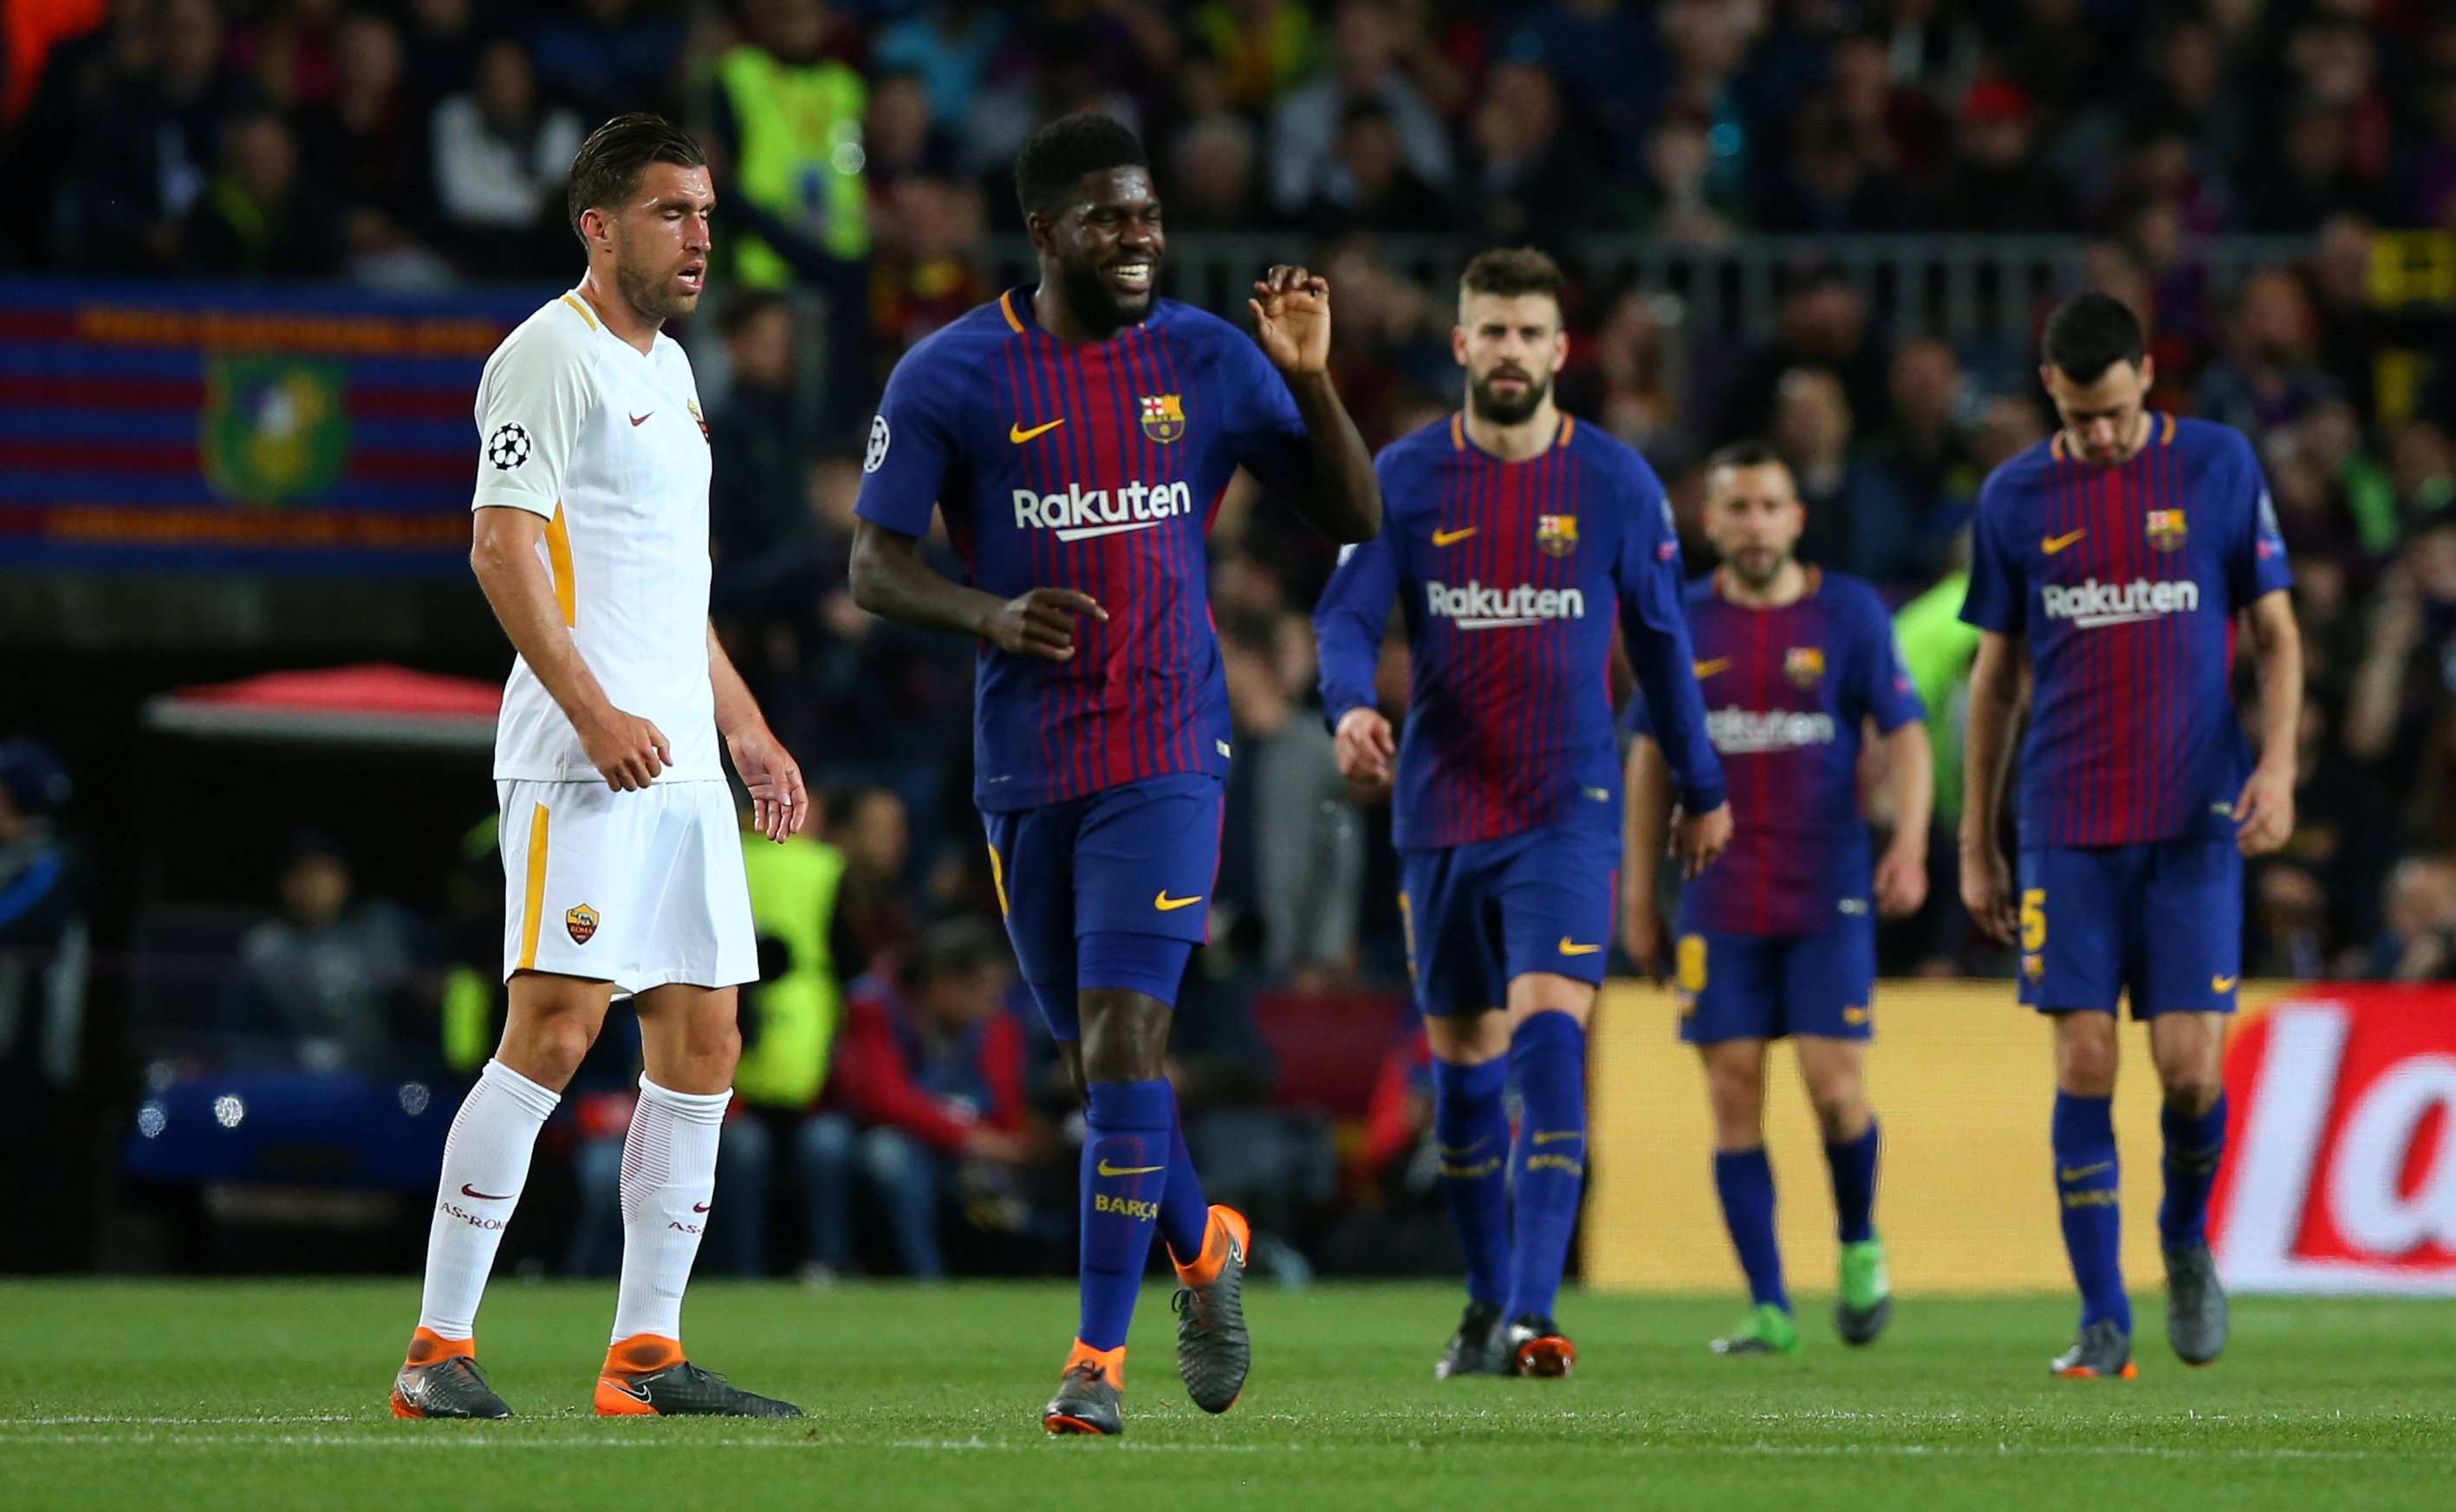 Niềm vui của các cầu thủ Barcelona sau khi nâng tỉ số lên 2-0. Ảnh: REUTERS